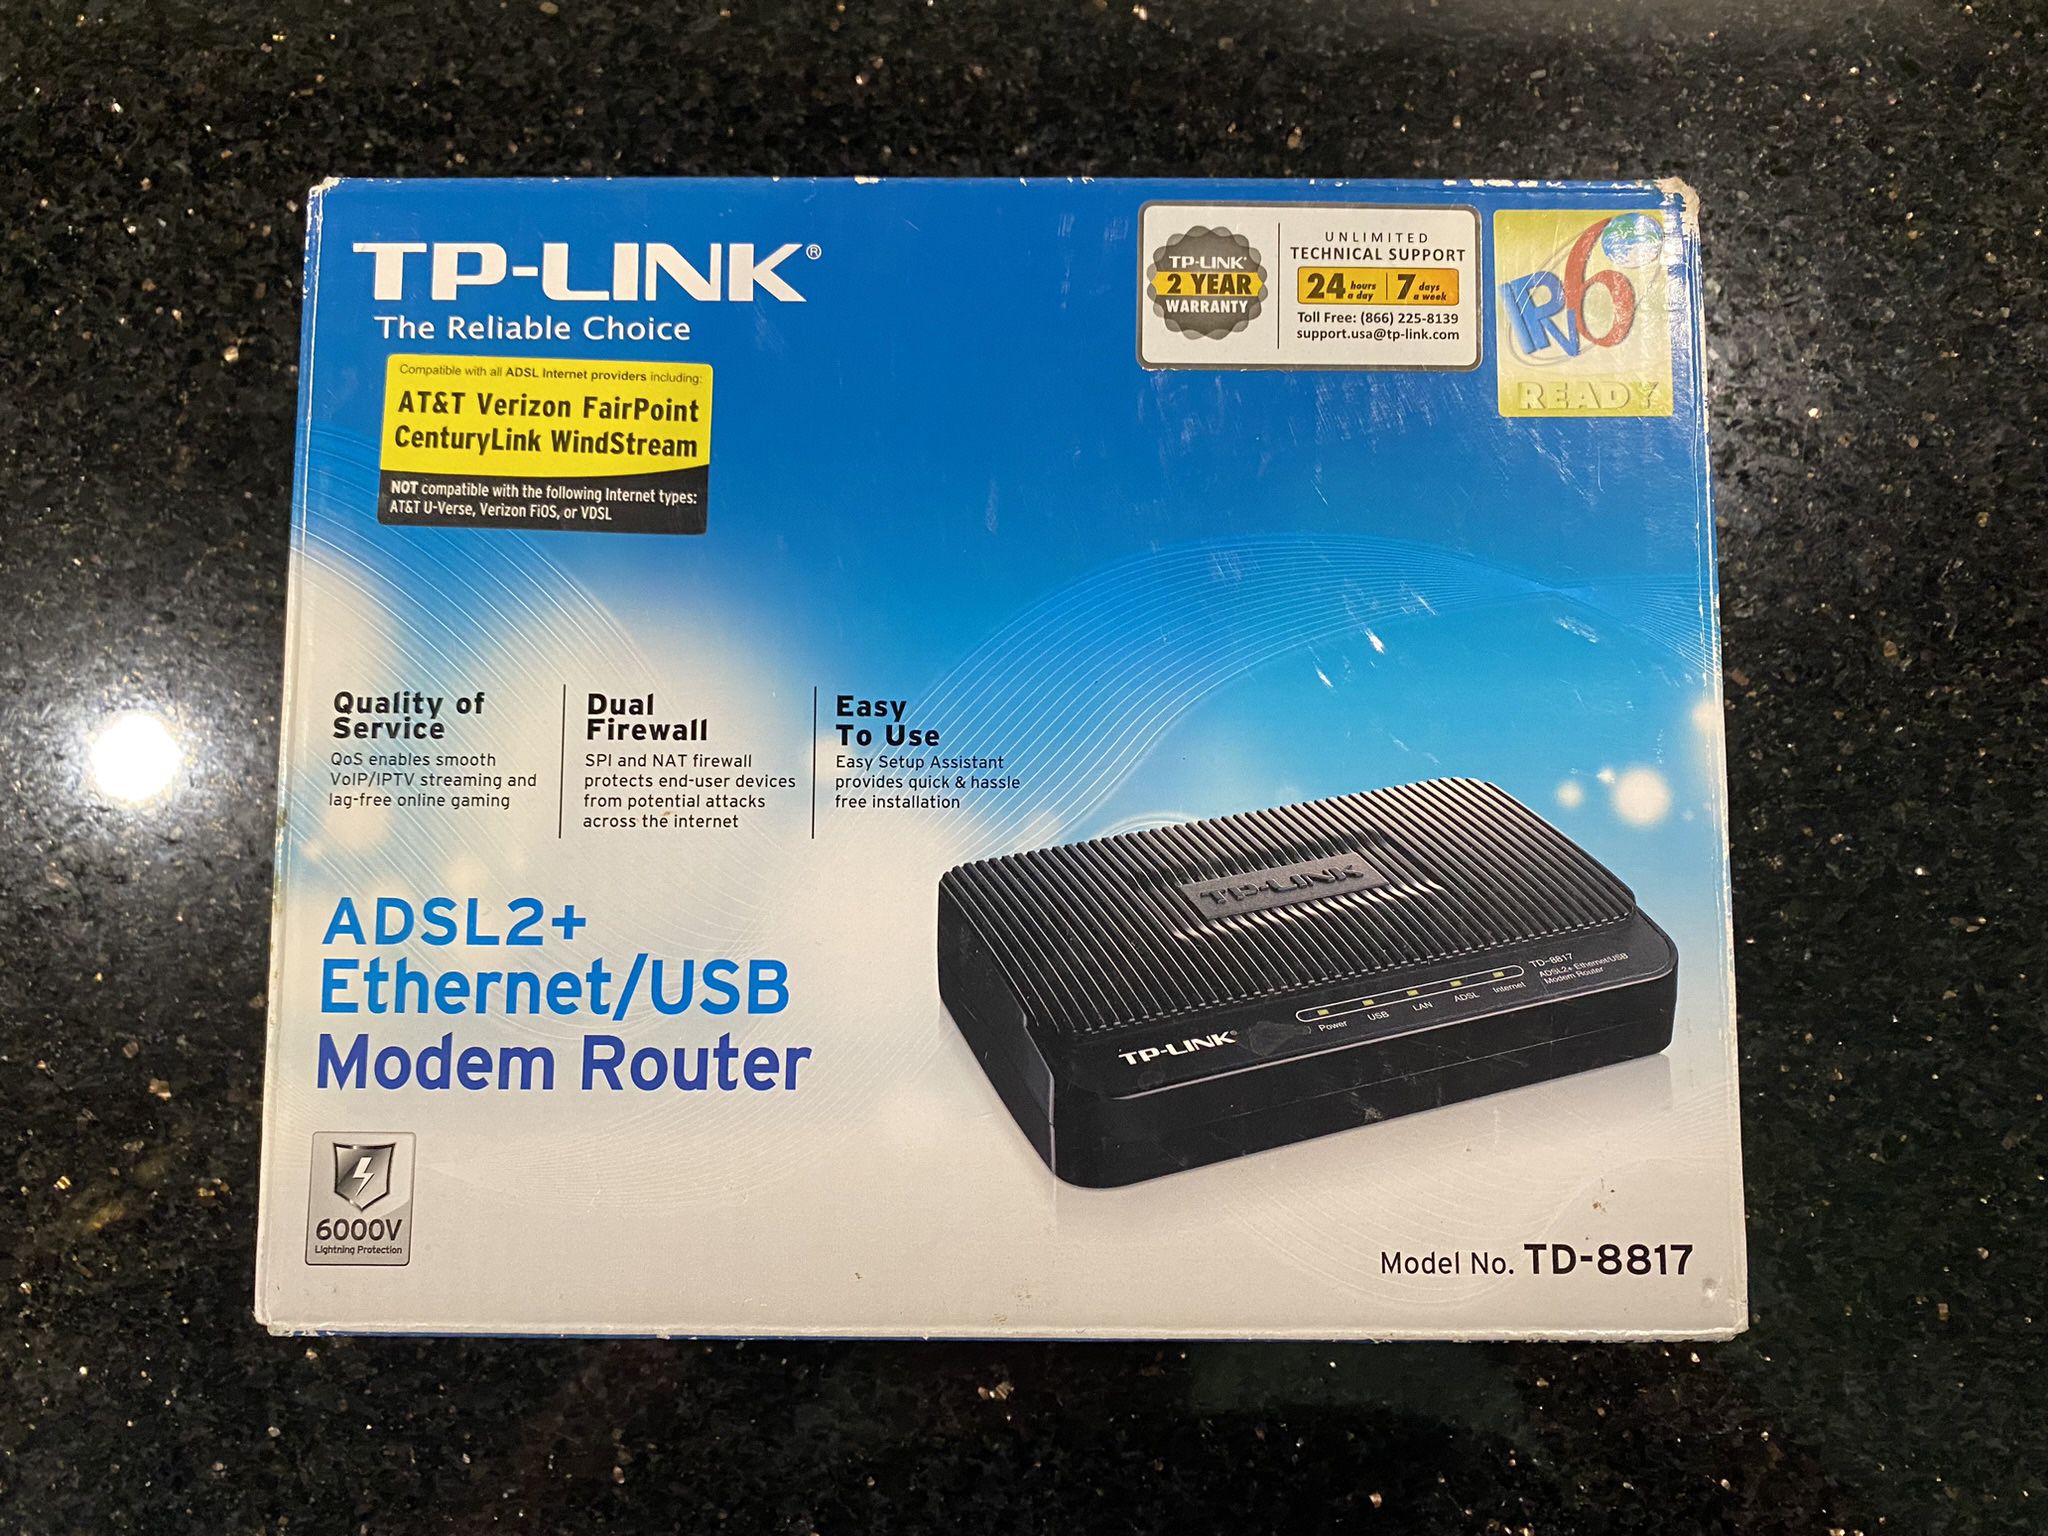 TP-LINK ADSL2+ Ethernet/USB Modem Router TD-8816